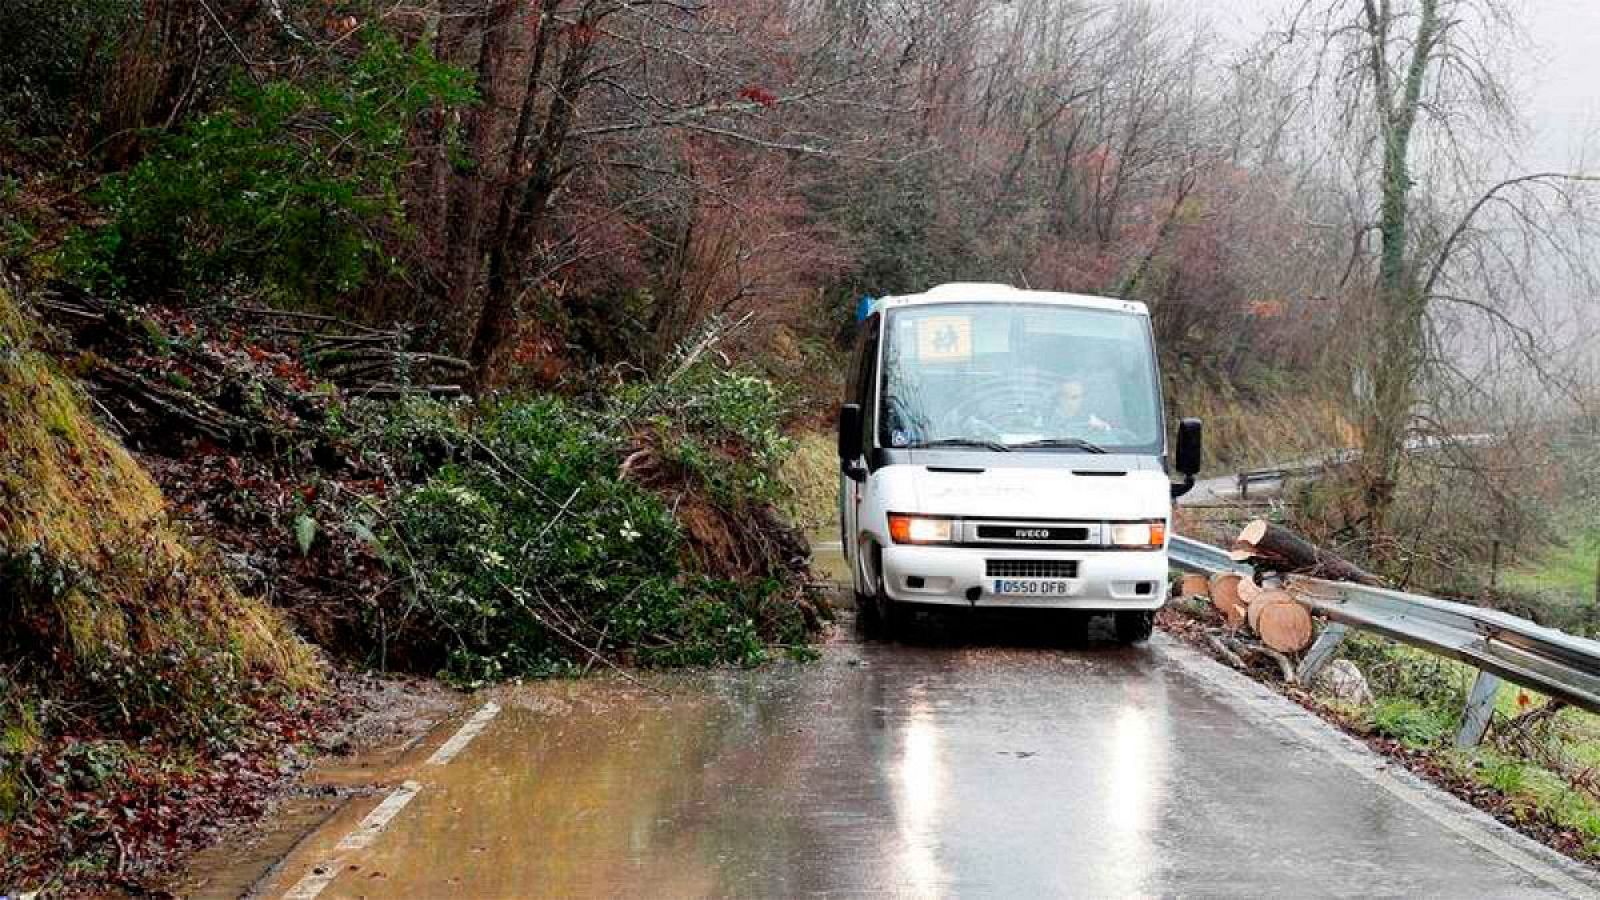 El fuerte temporal de lluvia registrado en Asturias, que ha generado importantes inundaciones, desprendimientos y cortes de infraestructuras, se ha saldado este jueves con tres fallecidos en accidentes de tráfico. También hay un cuarto fallecido al c